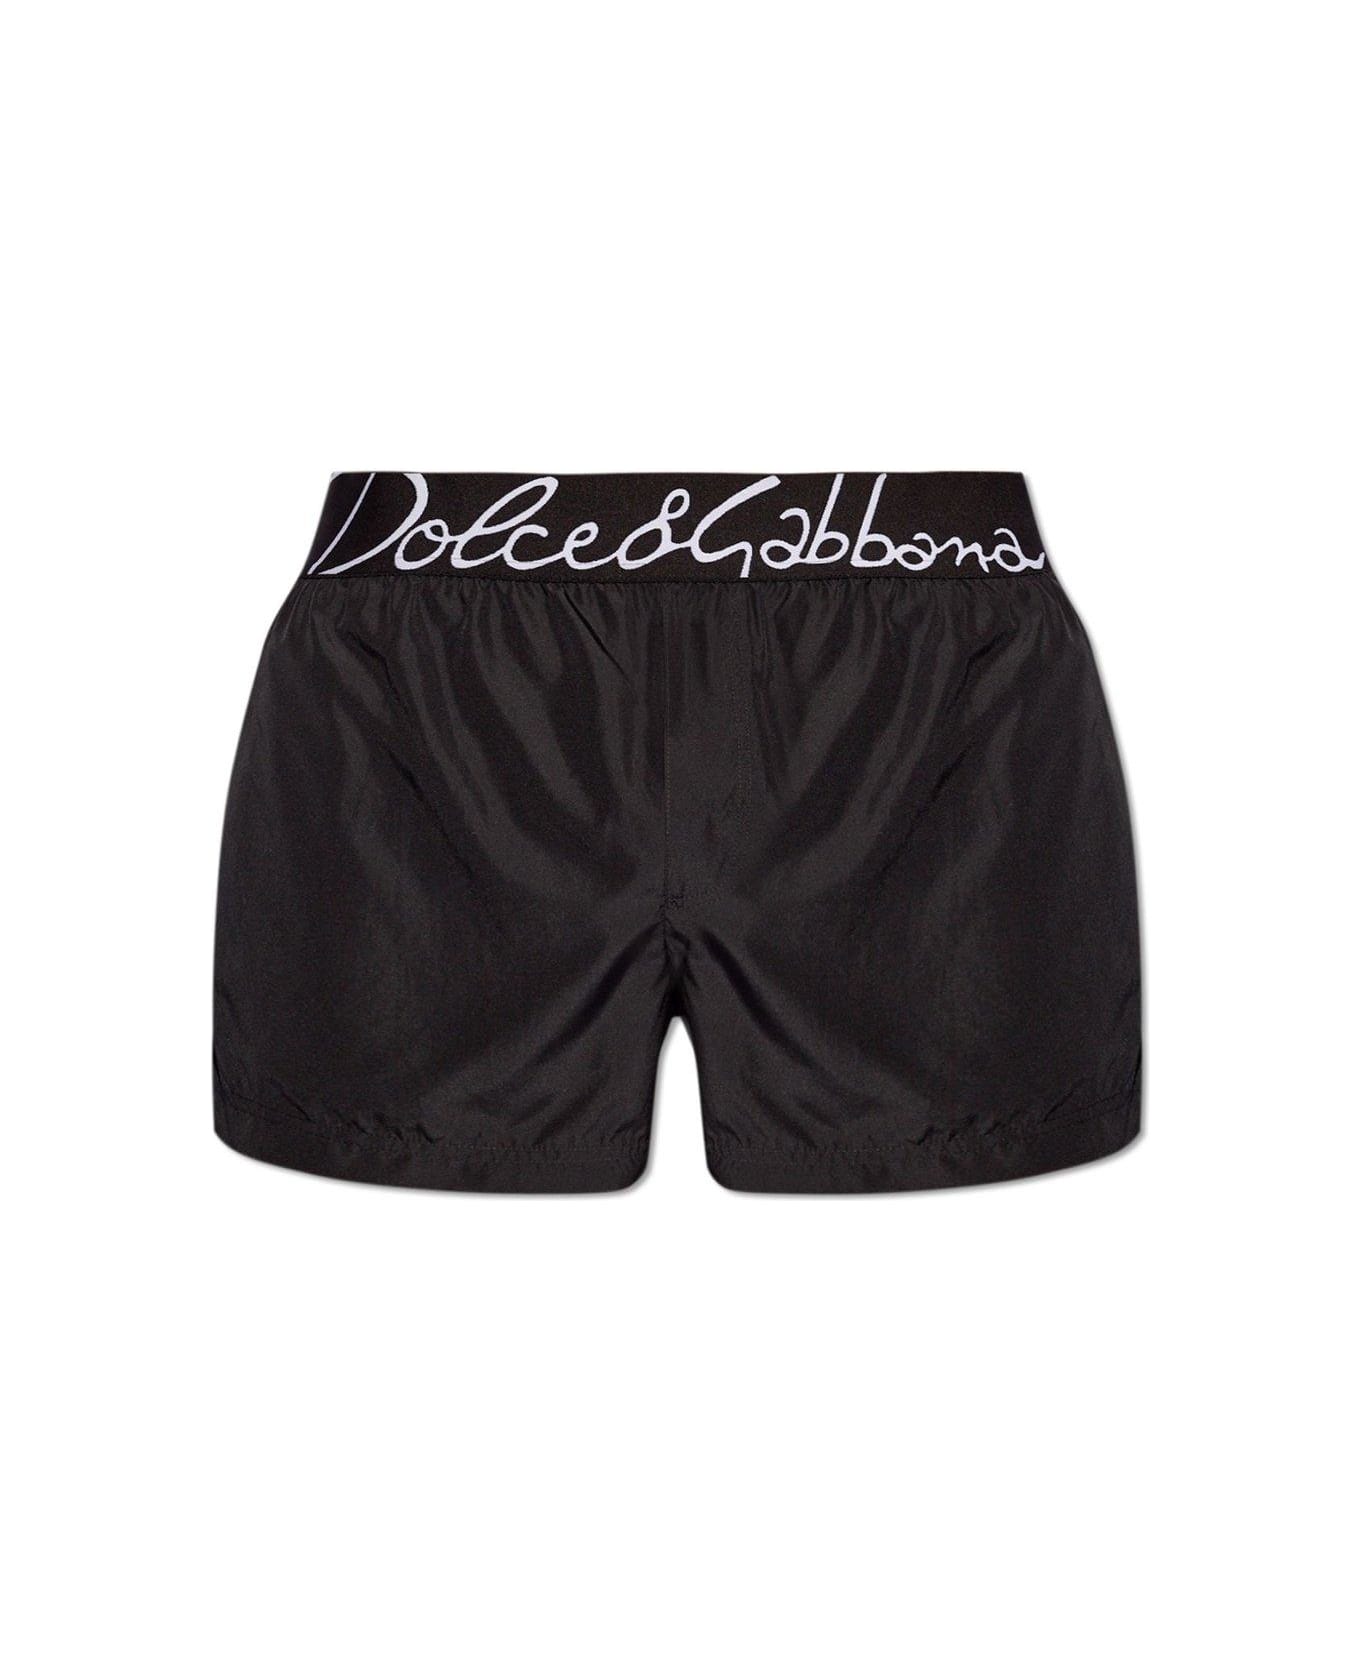 Dolce & Gabbana Swim Trunks - Nero 水着